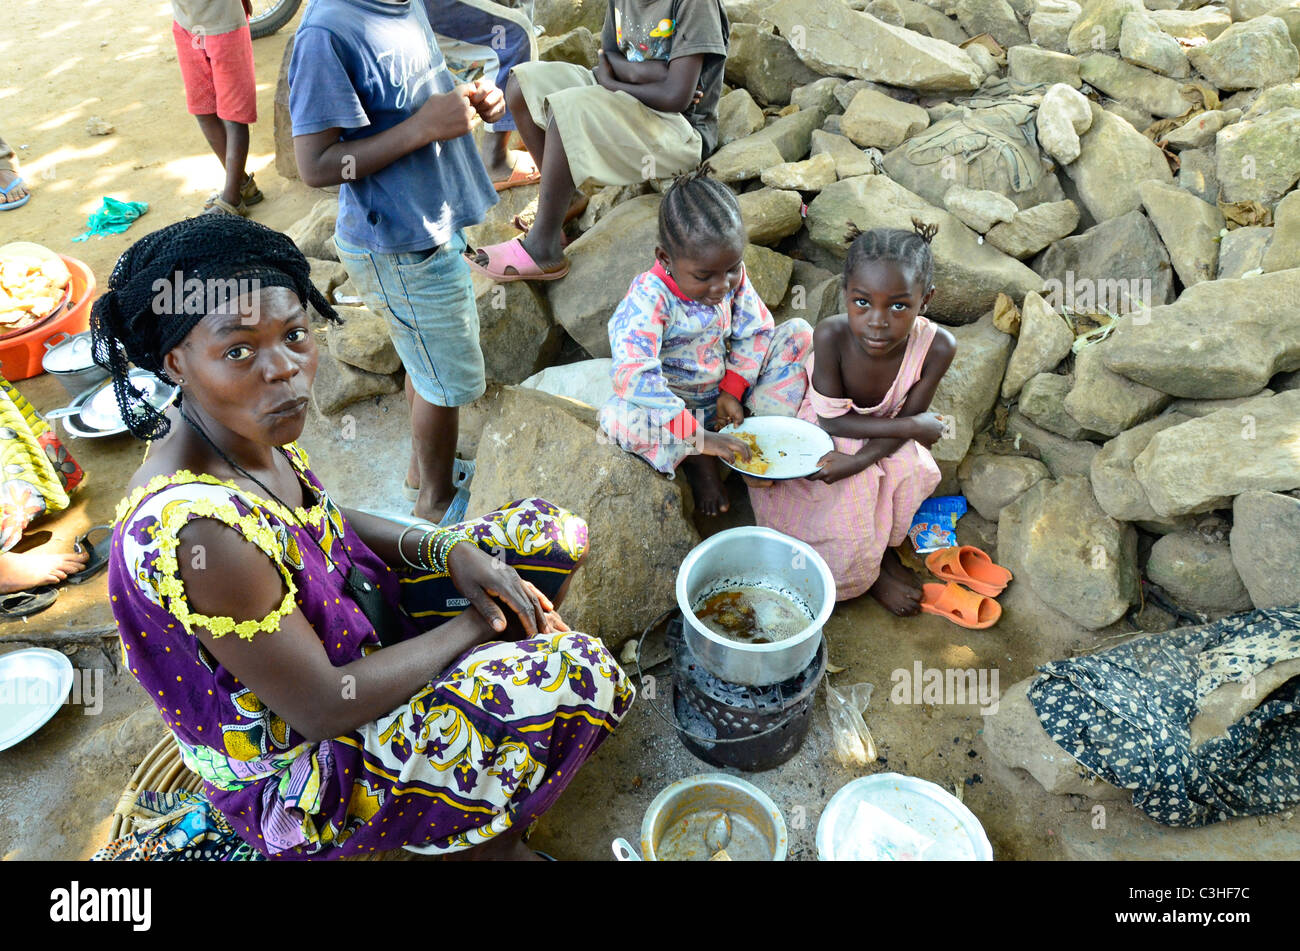 La donna la preparazione di cibo nella città di Beni, nella parte orientale della Repubblica Democratica del Congo nel gennaio 2011. Foto Stock